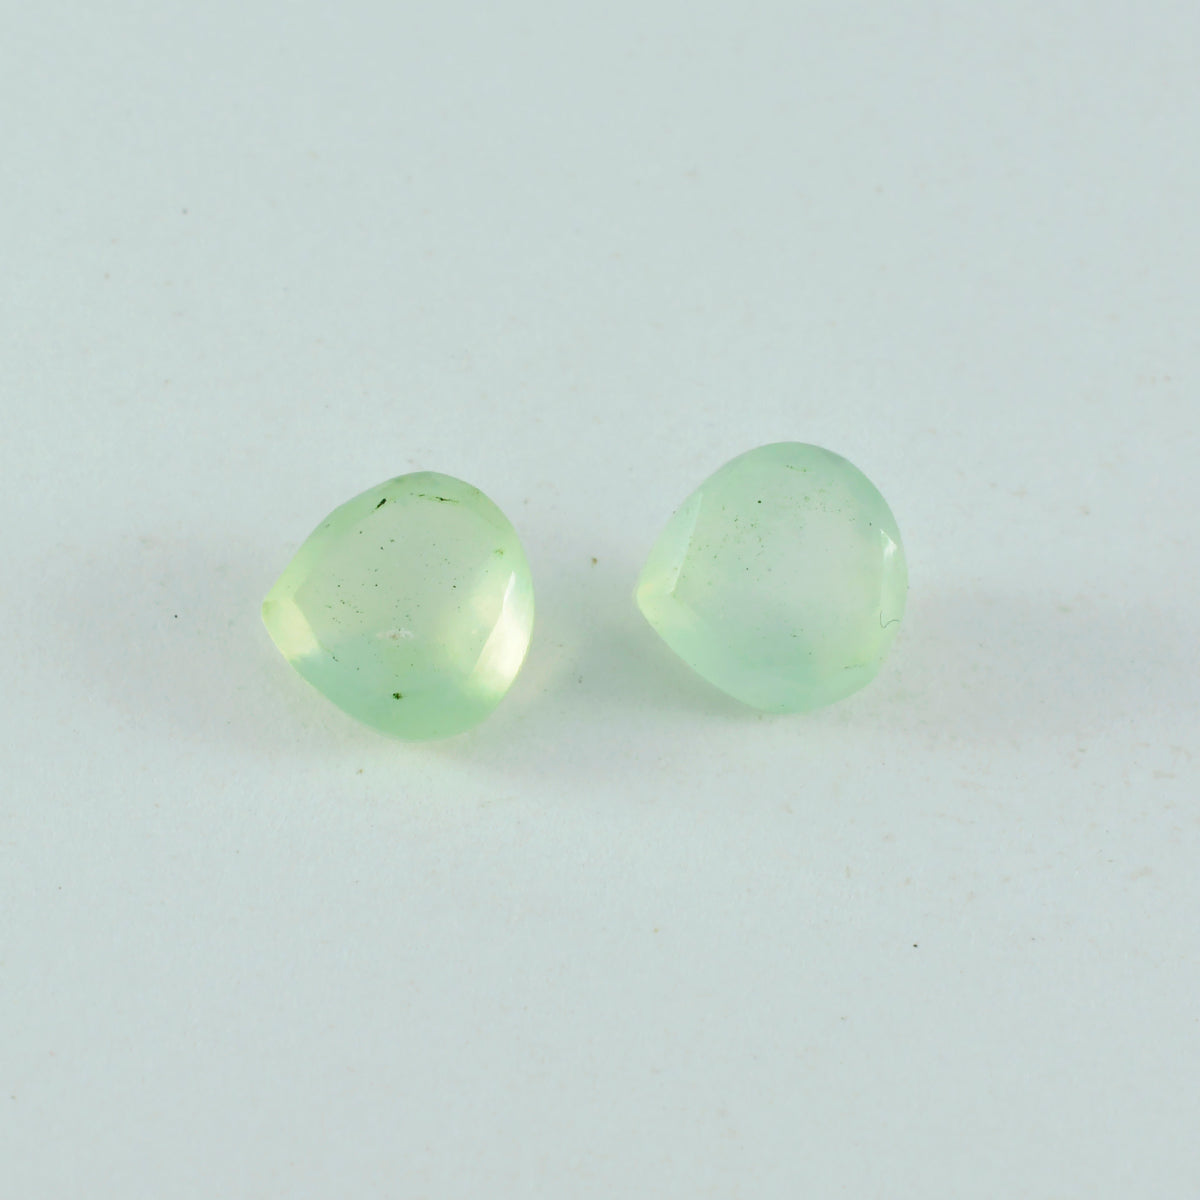 Riyogems 1pc préhnite verte à facettes 5x5mm en forme de coeur superbe qualité pierres précieuses en vrac